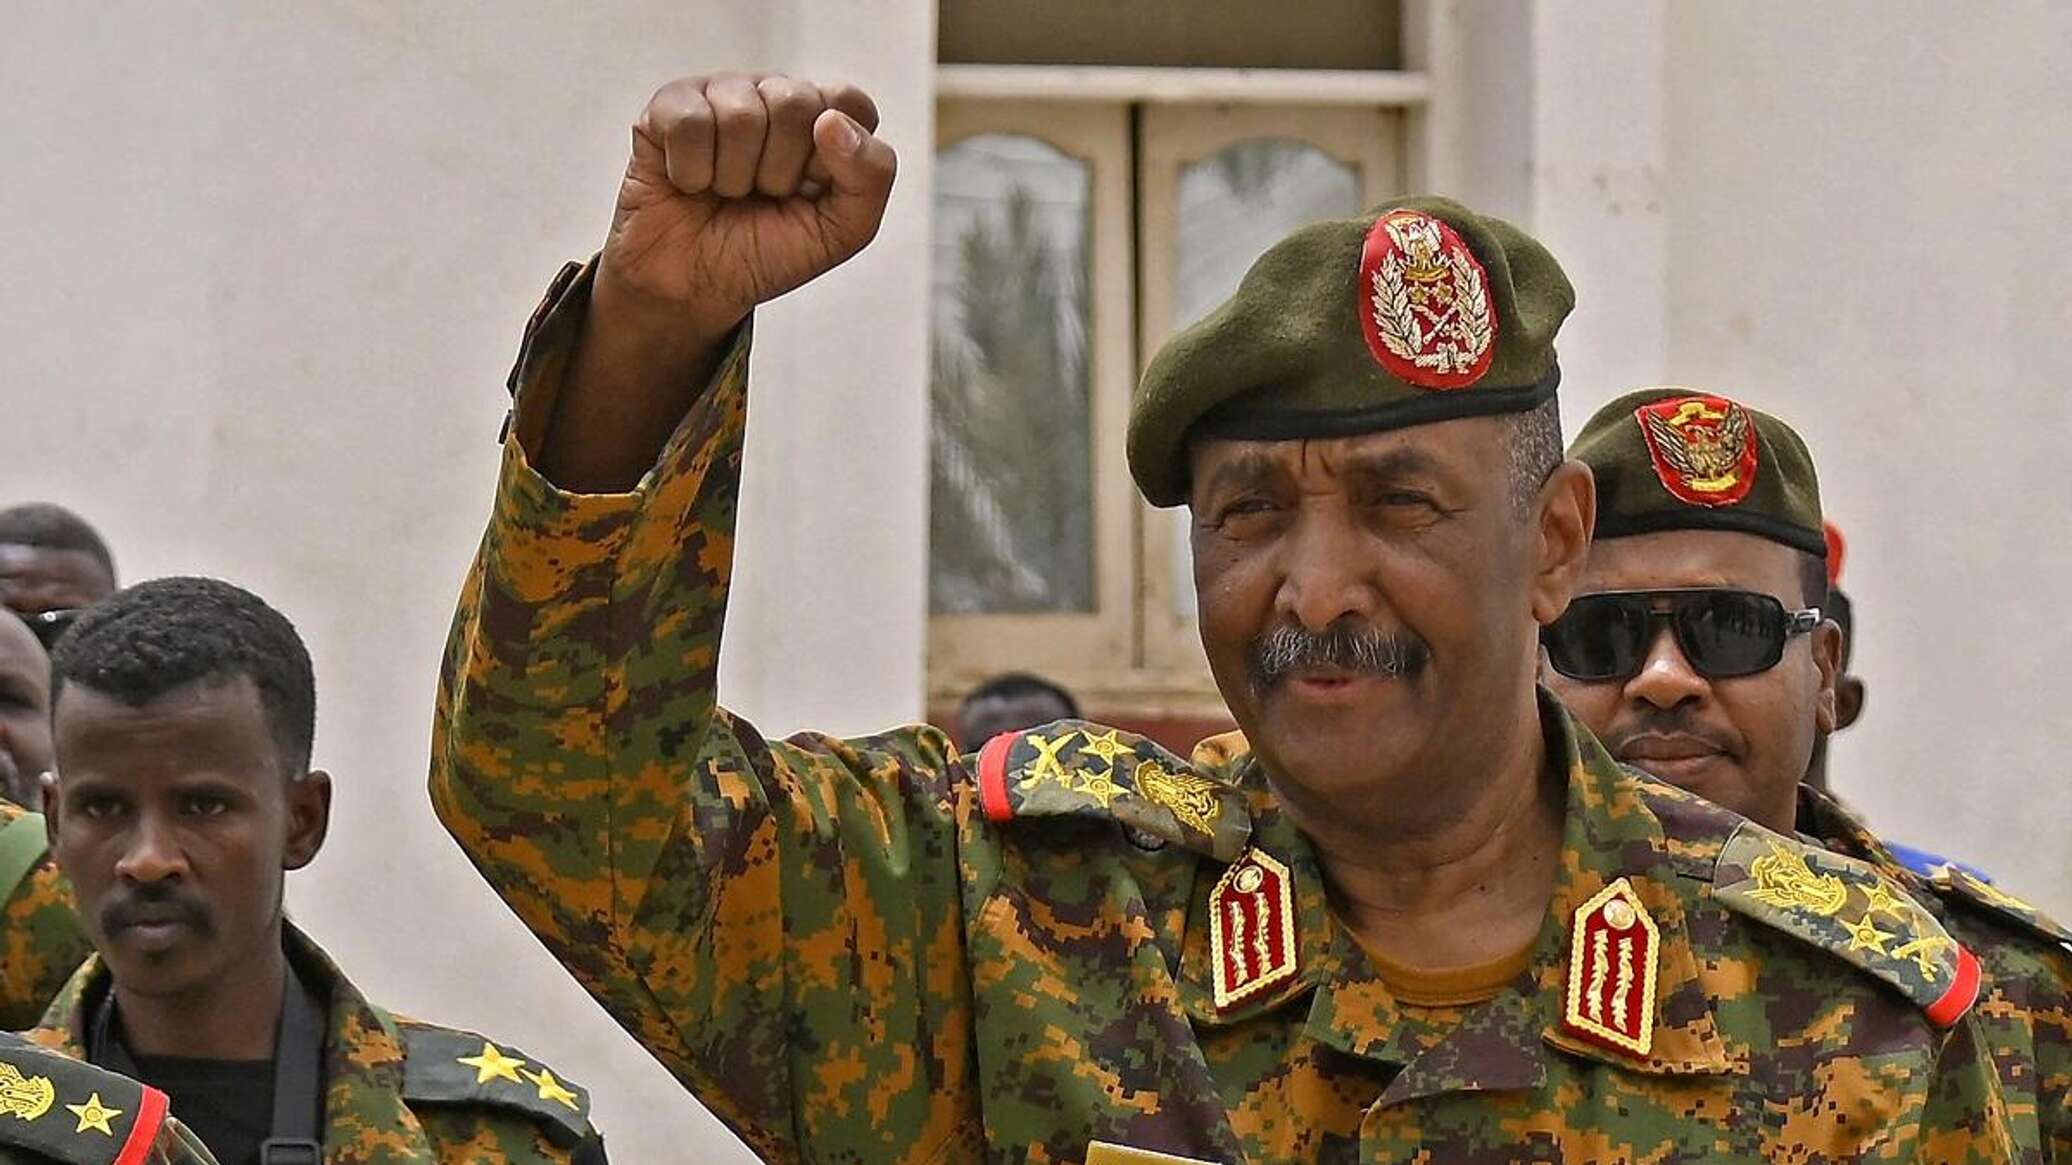 البرهان: نحن مع إيقاف الحرب والاقتتال وعودة الحياة الطبيعية للشعب السوداني